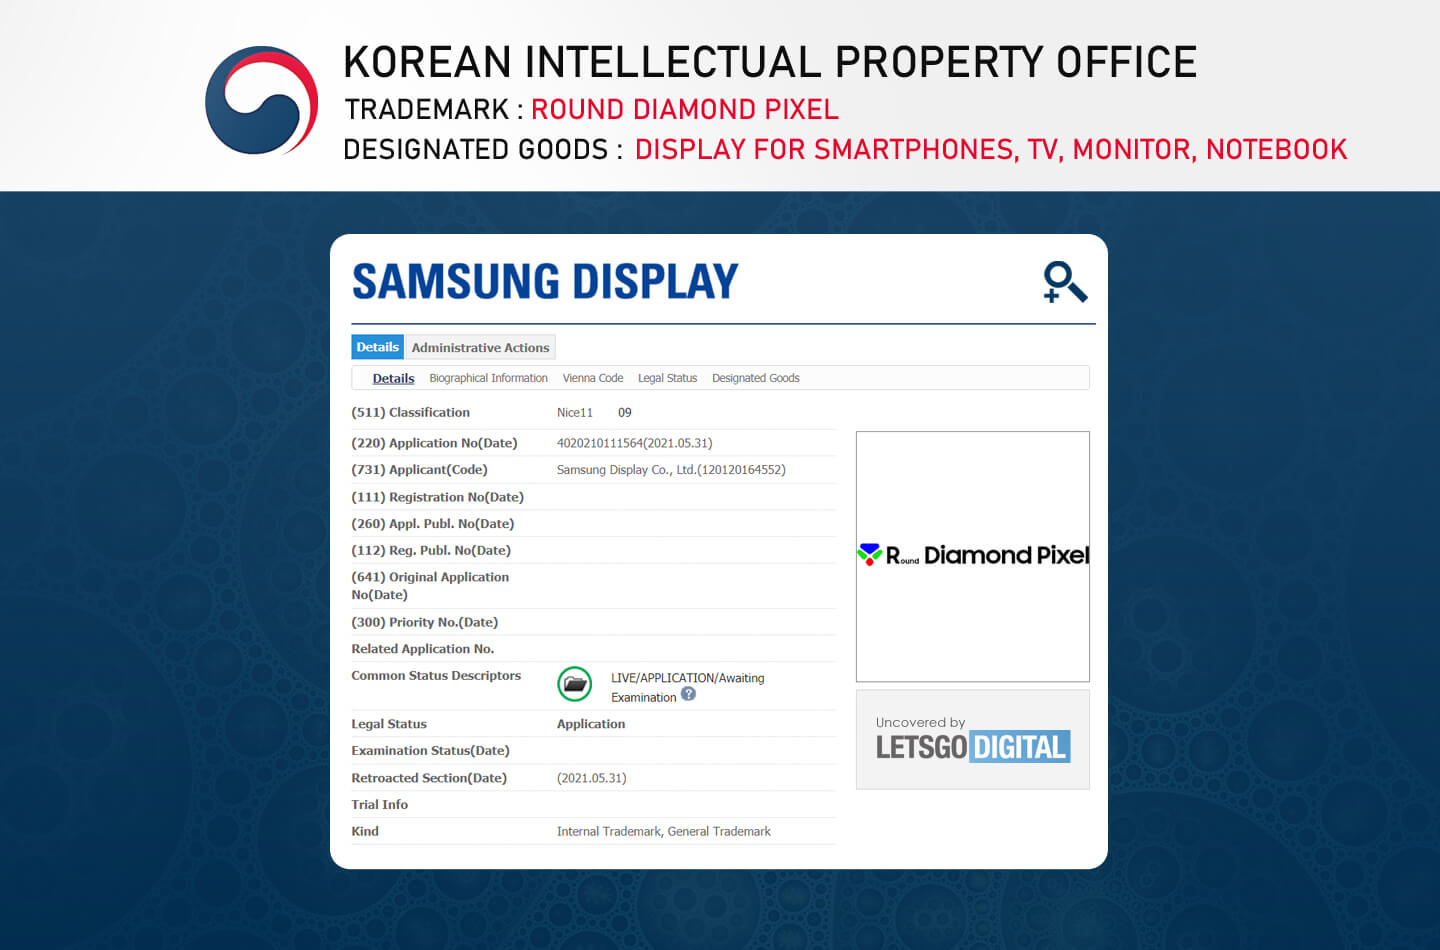 Samsung Galaxy Z Flip display